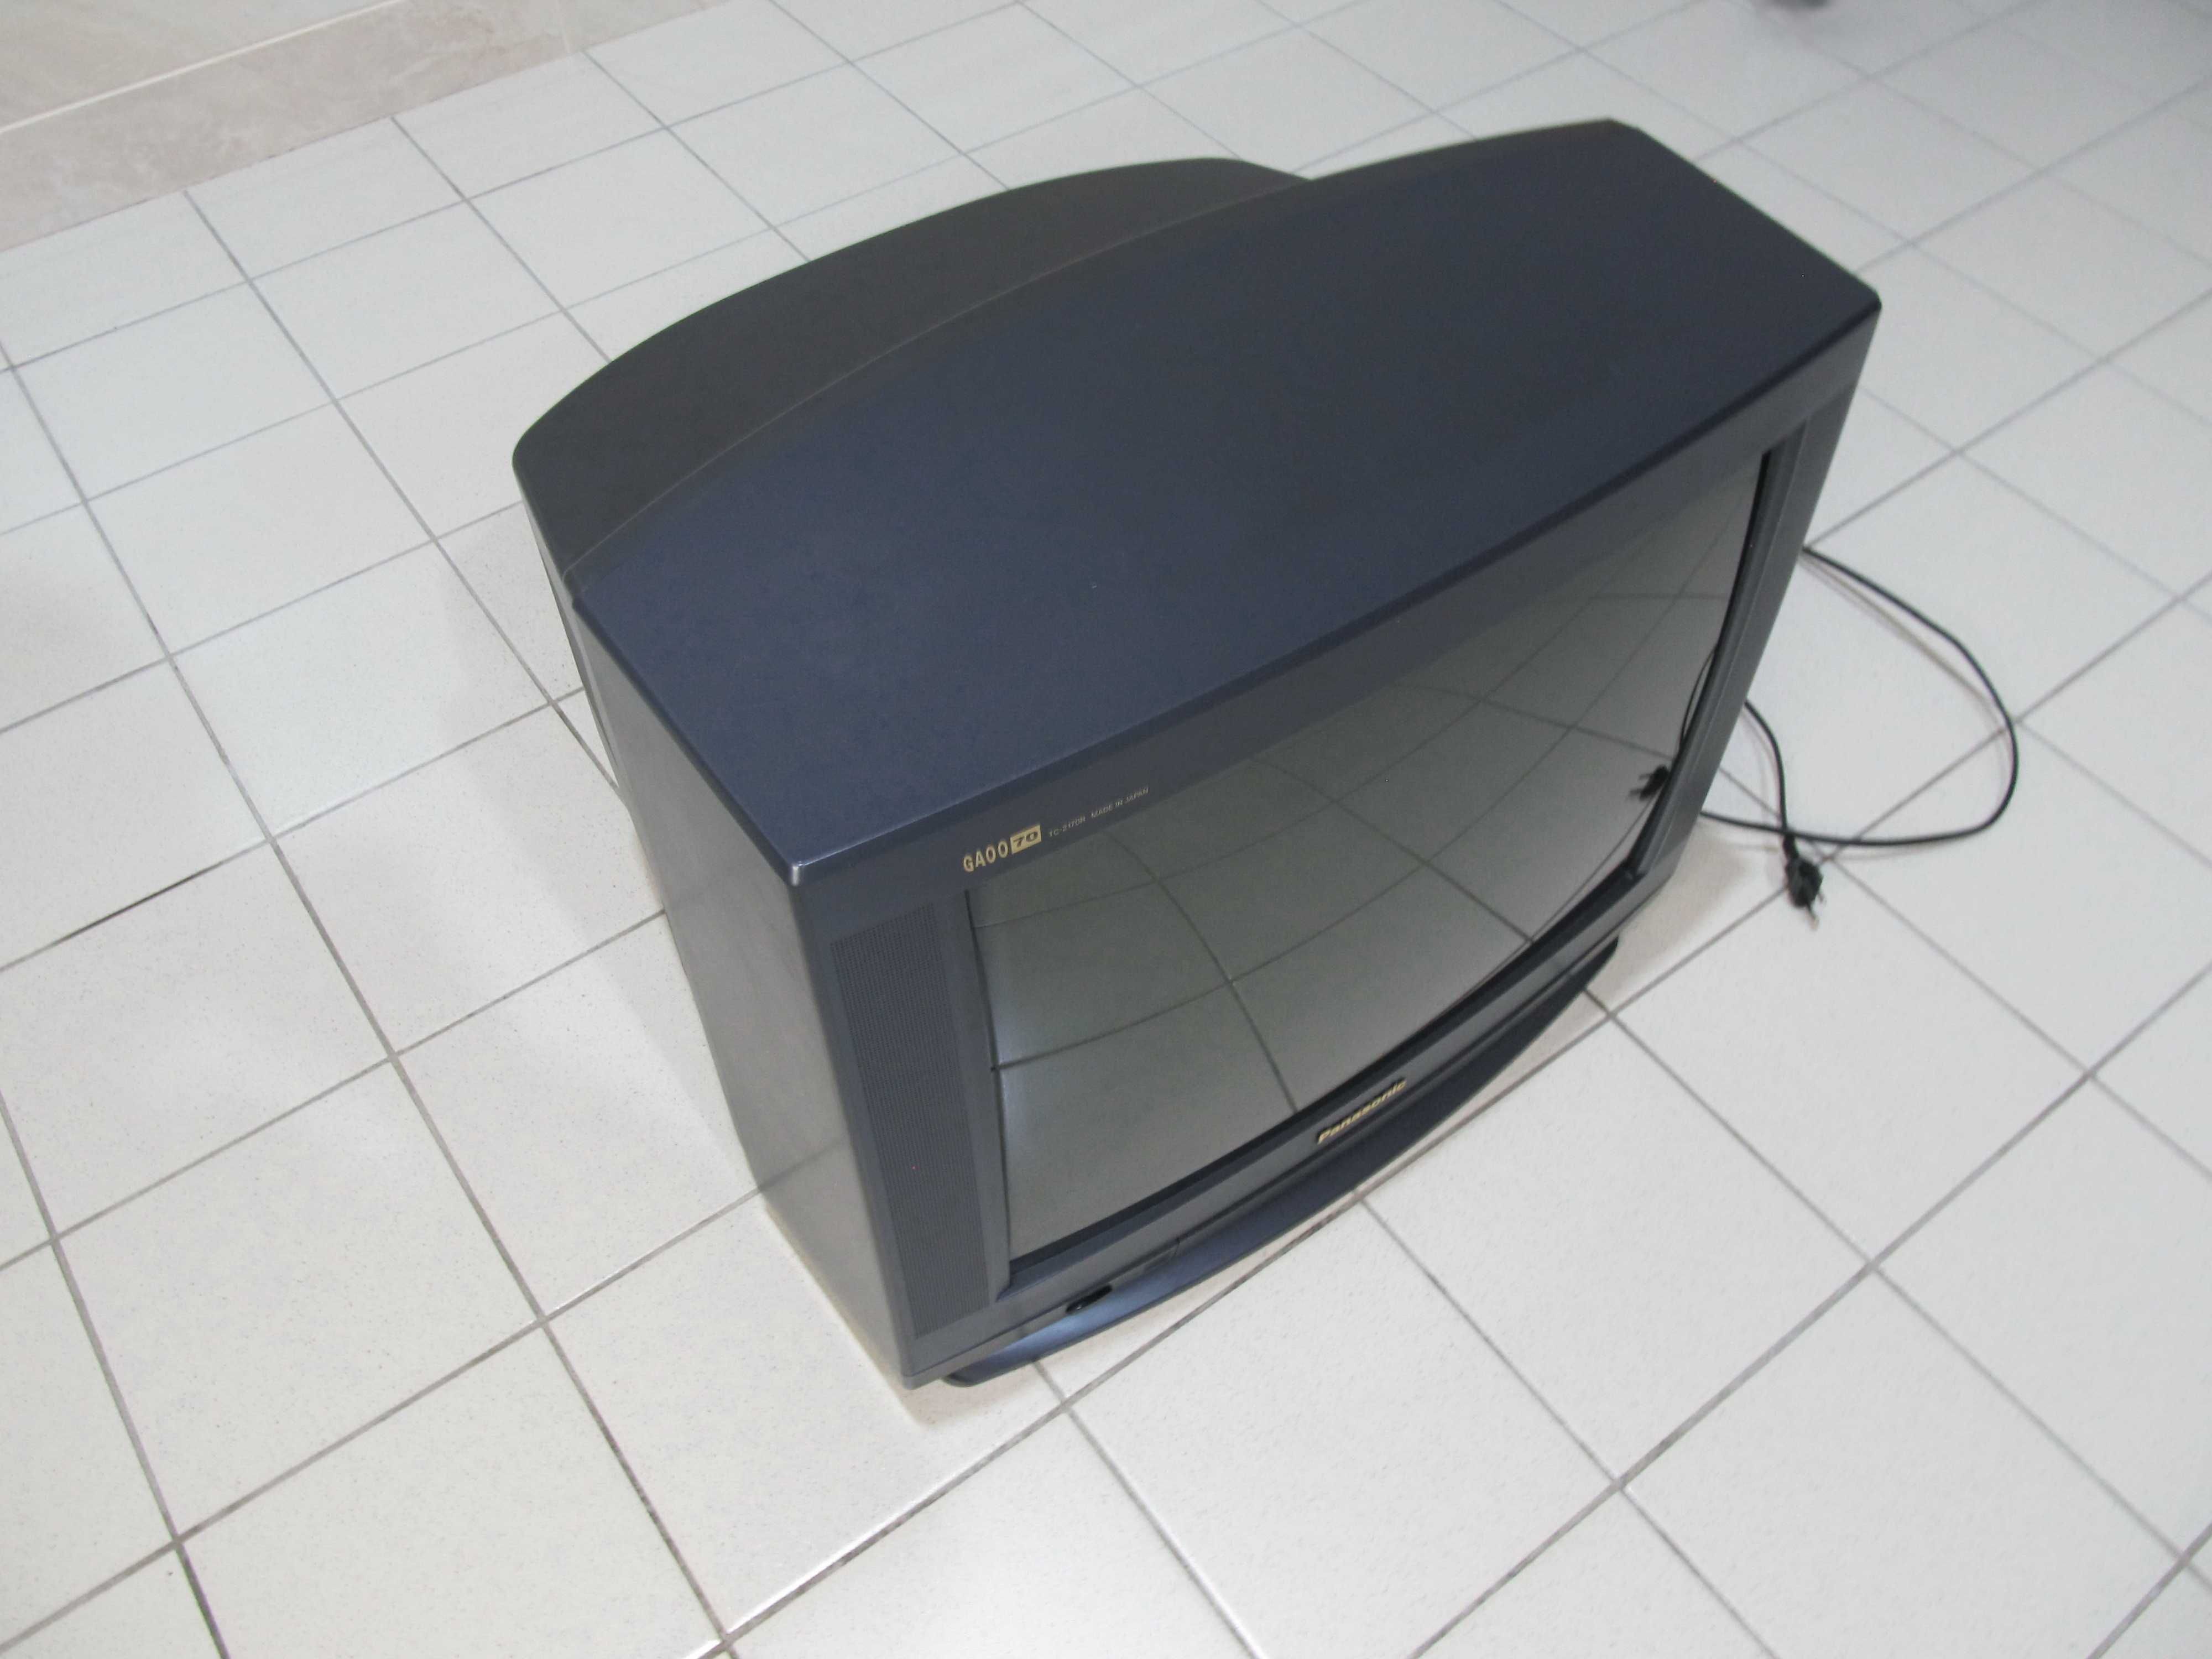 Телевизор Panasonic GAOO70 TC-2170R